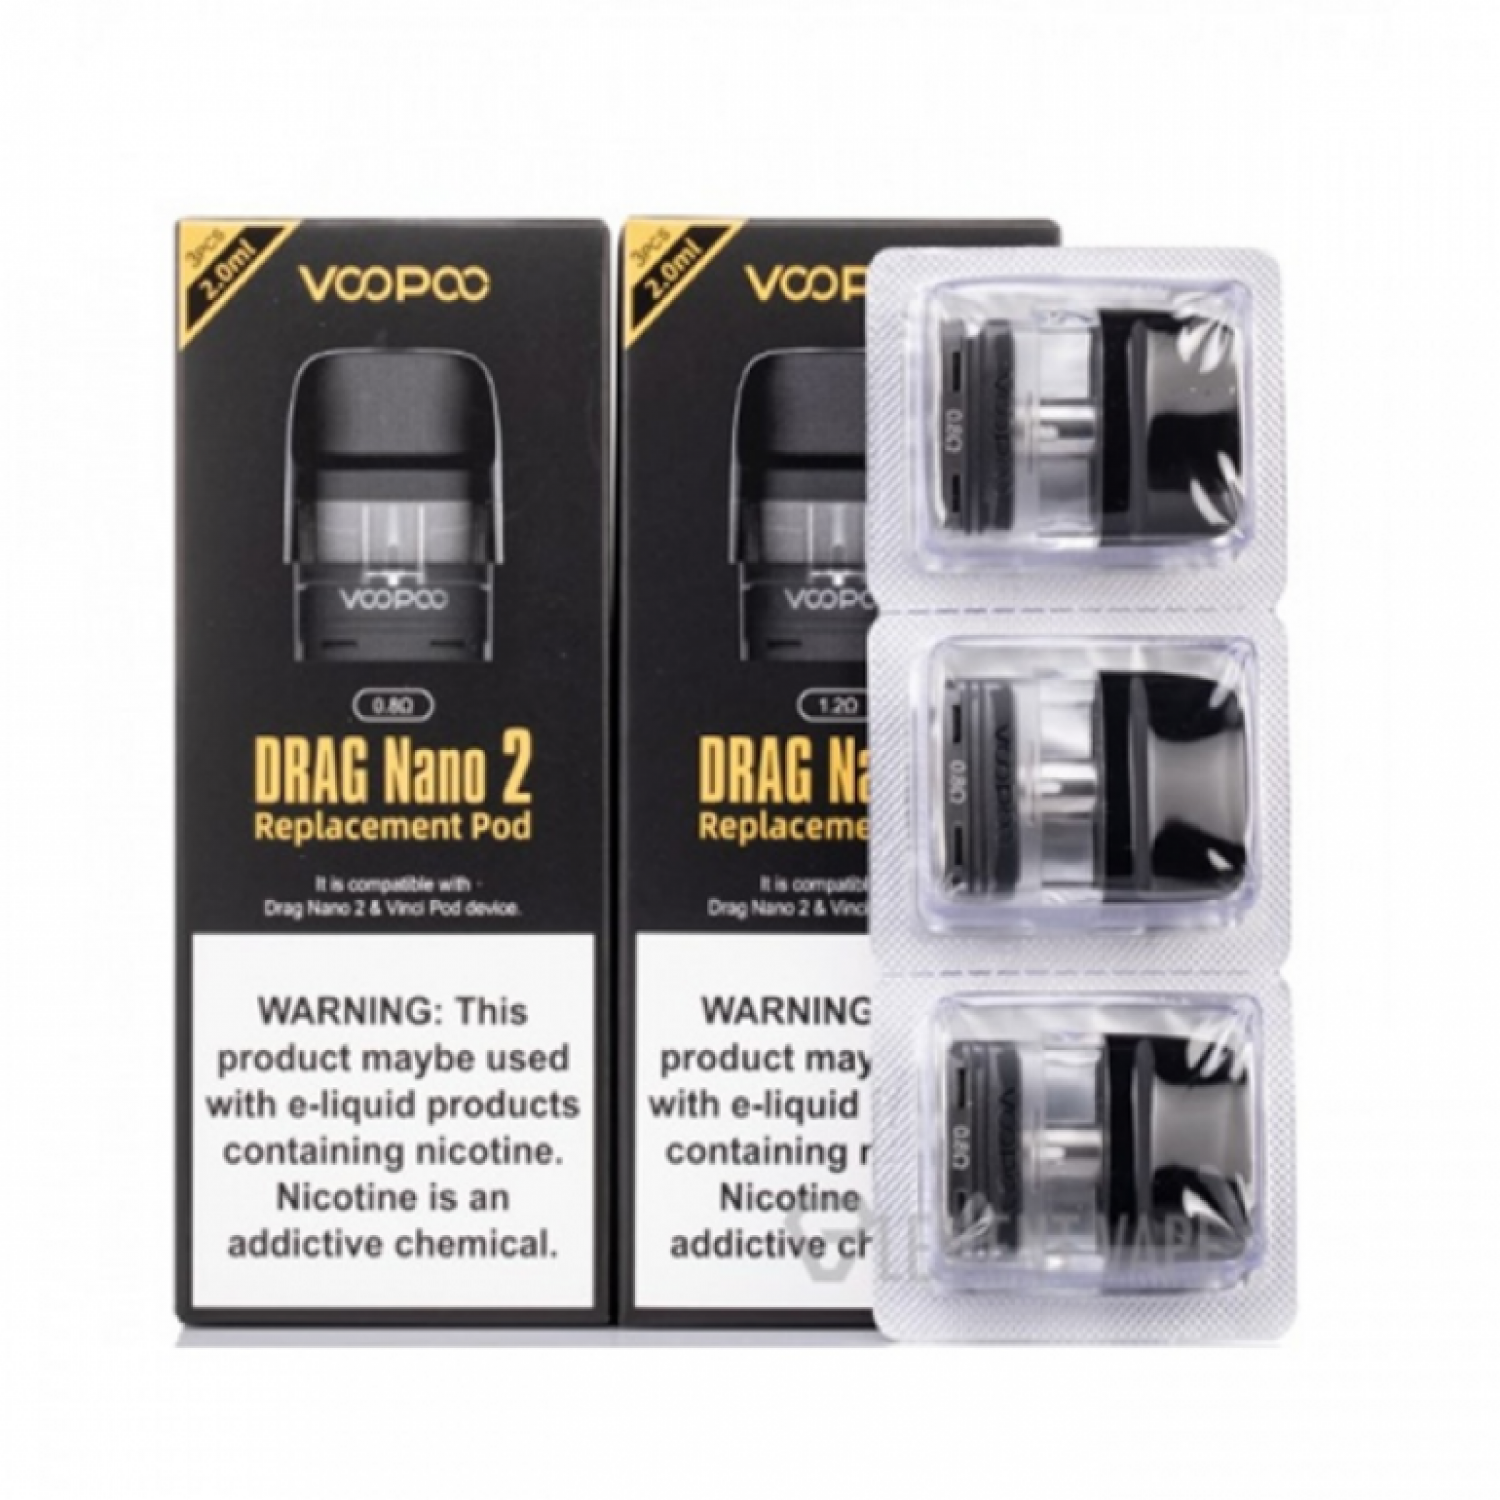 Voopoo- Drag Nano 2 & Vinci Q Kartuş (3 Adet)